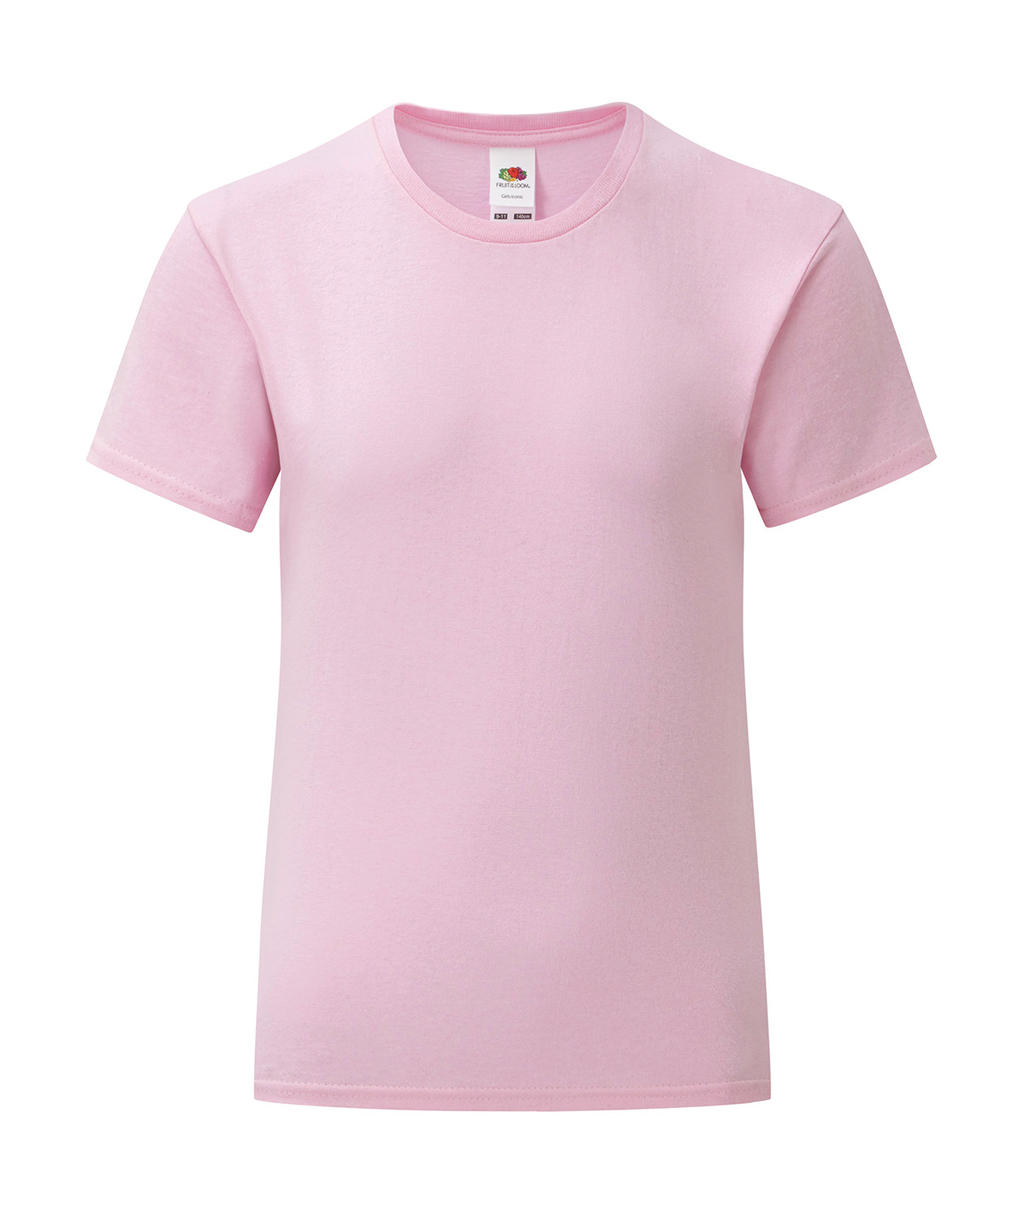 Dívčí tričko Iconic T 150 Barva: růžová, Velikost: 5-6 let